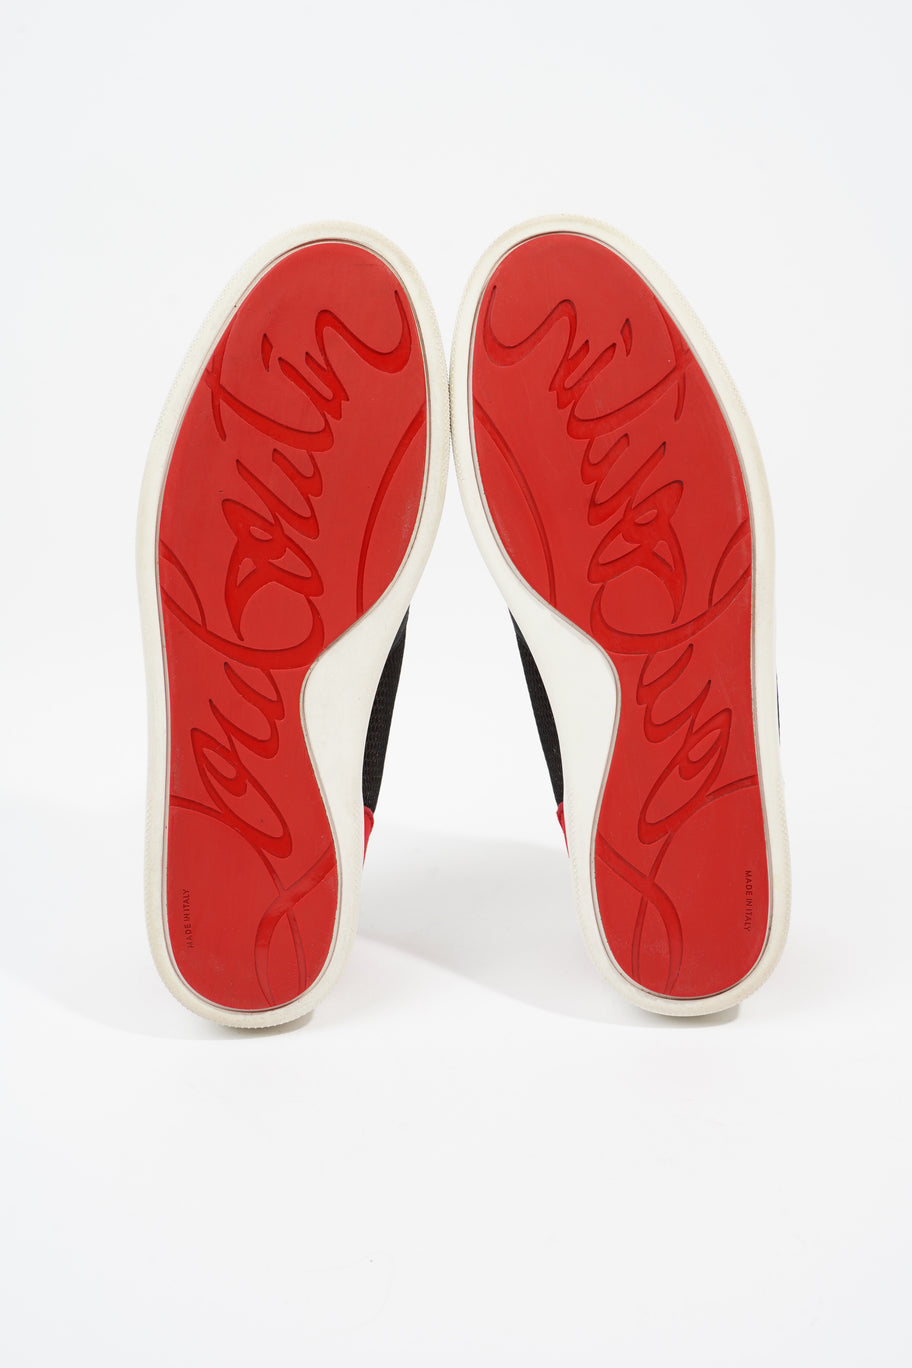 Happyrui Sneakers Black / Red Mesh EU 42.5 UK 8.5 Image 7